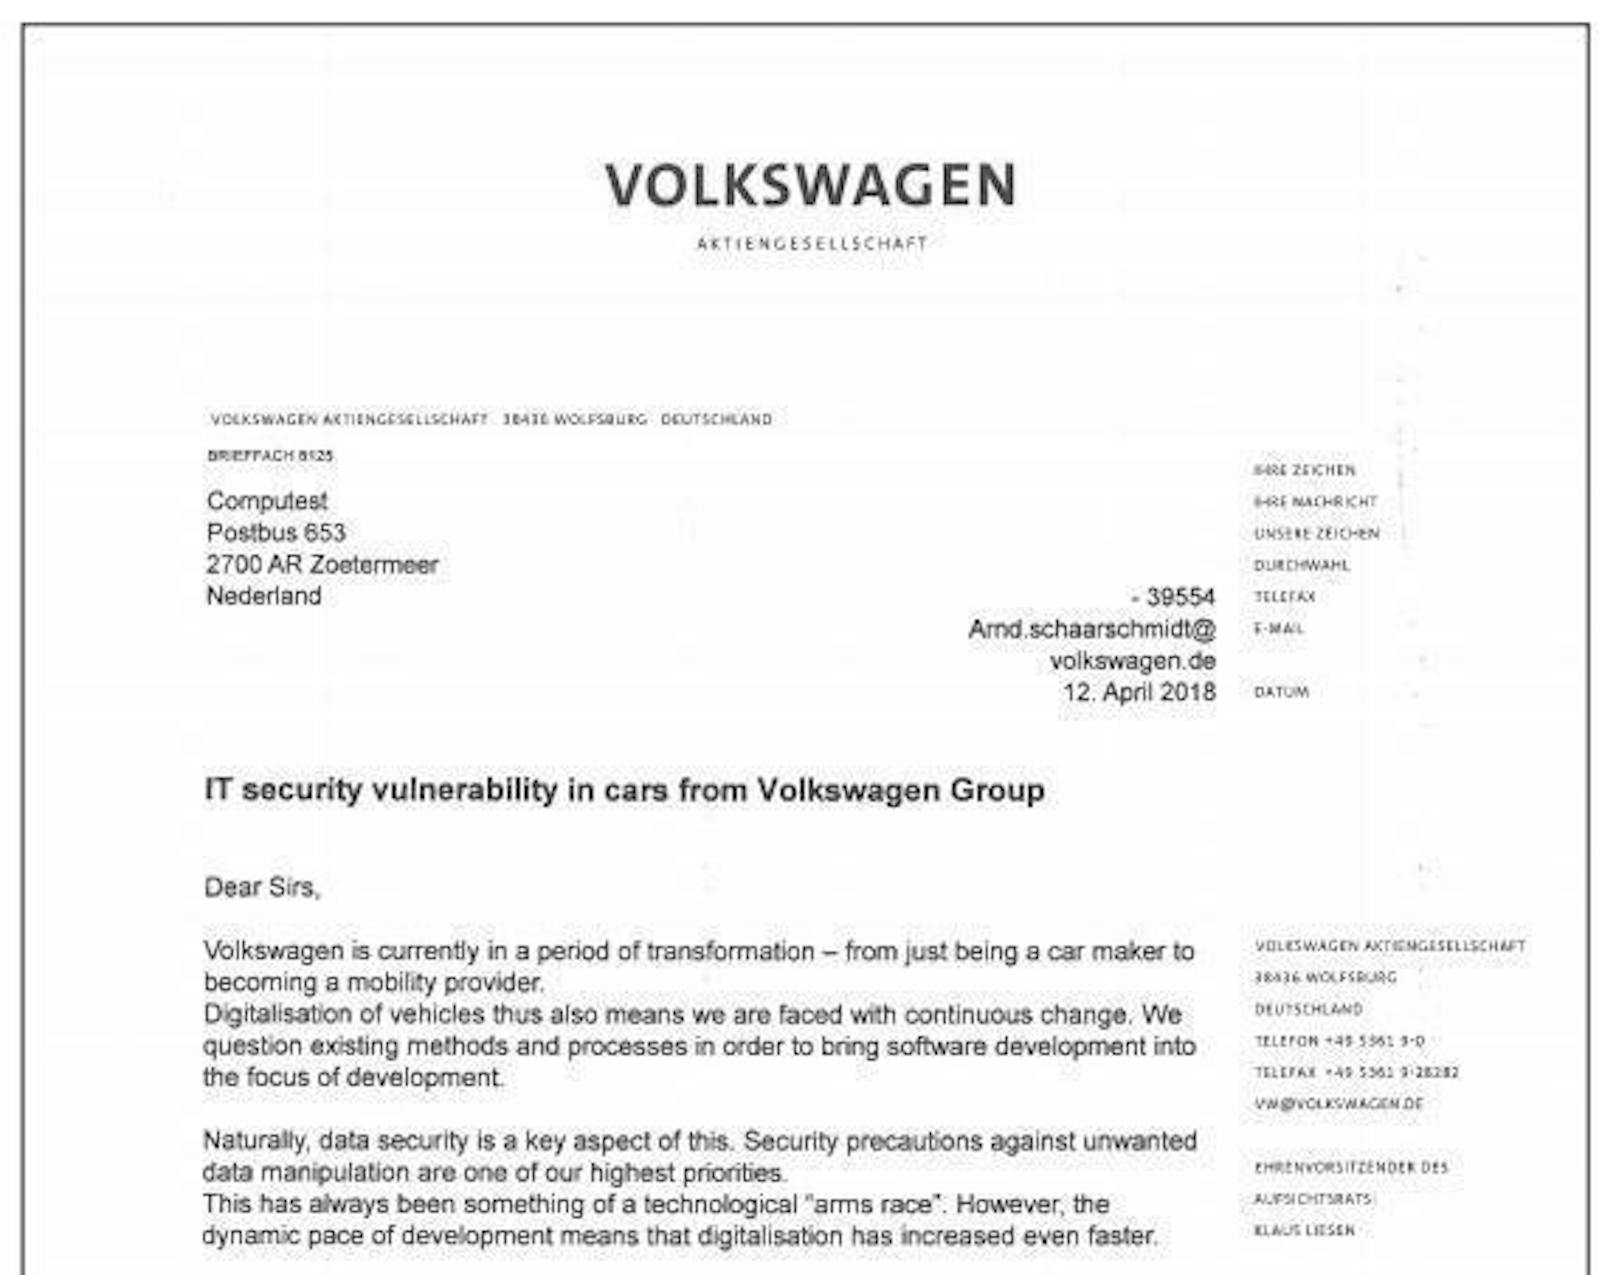 Die Volkswagen-Gruppe hat die Forschungsergebnisse gegenüber Computest bestätigt und darüber informiert, dass die Probleme mit einem Update behoben wurden. Zumindest neue Autos seien daher nicht mehr für solche Hacks anfällig.